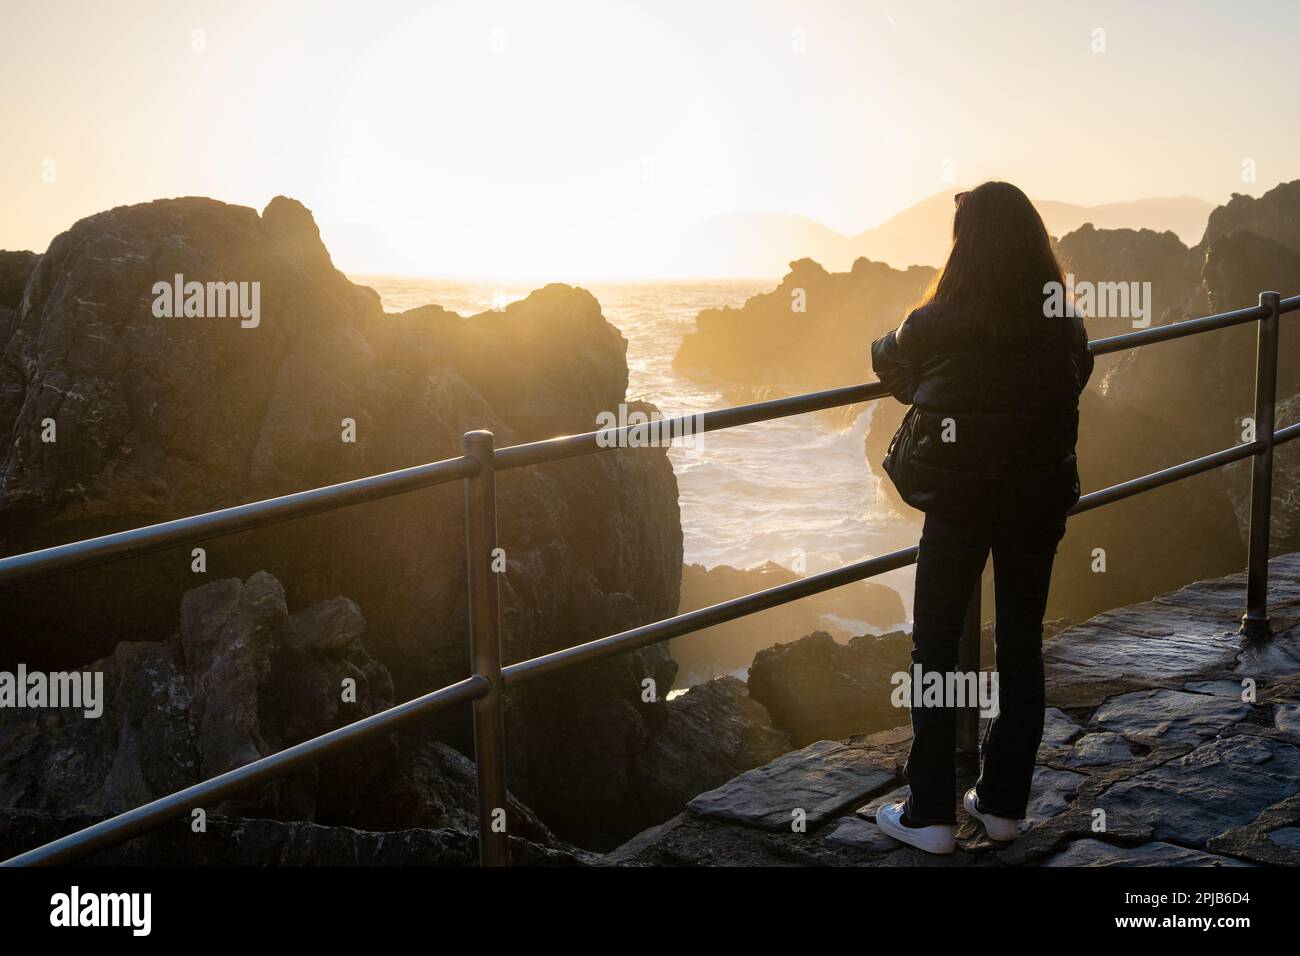 Eine einsame junge Frau steht nahe am Meer und beobachtet die Wellen bei Sonnenuntergang. Silhouette. Tourist. Raue See. Blick von hinten Stockfoto